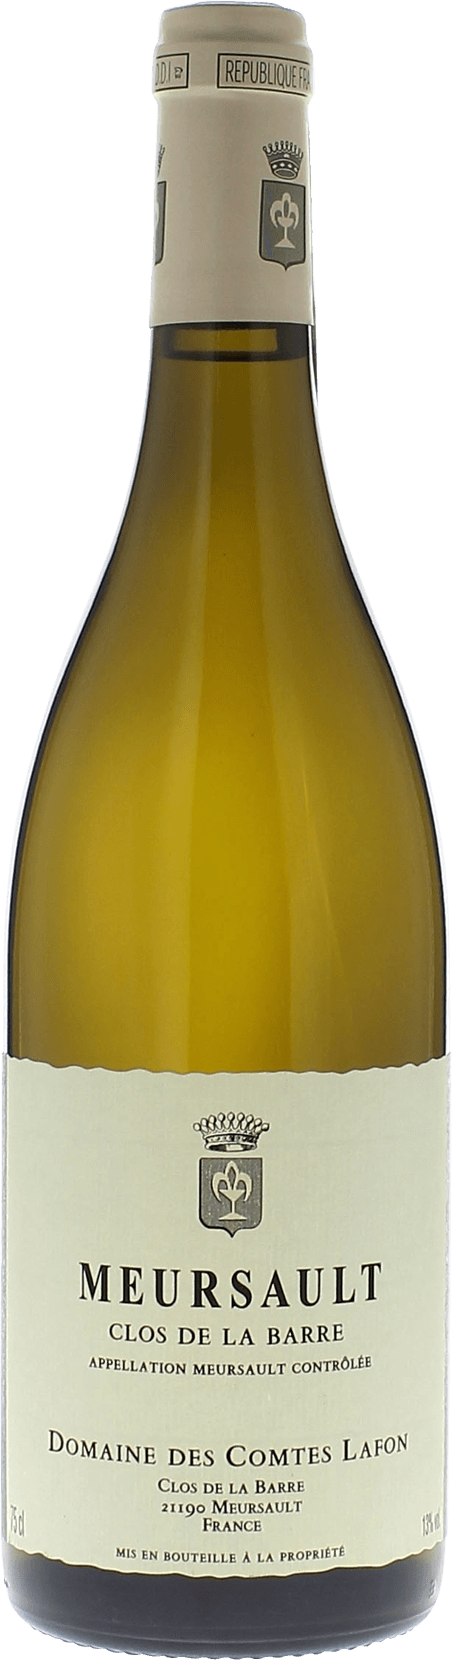 Meursault clos de la barre 2016 Domaine Comtes LAFON, Bourgogne blanc